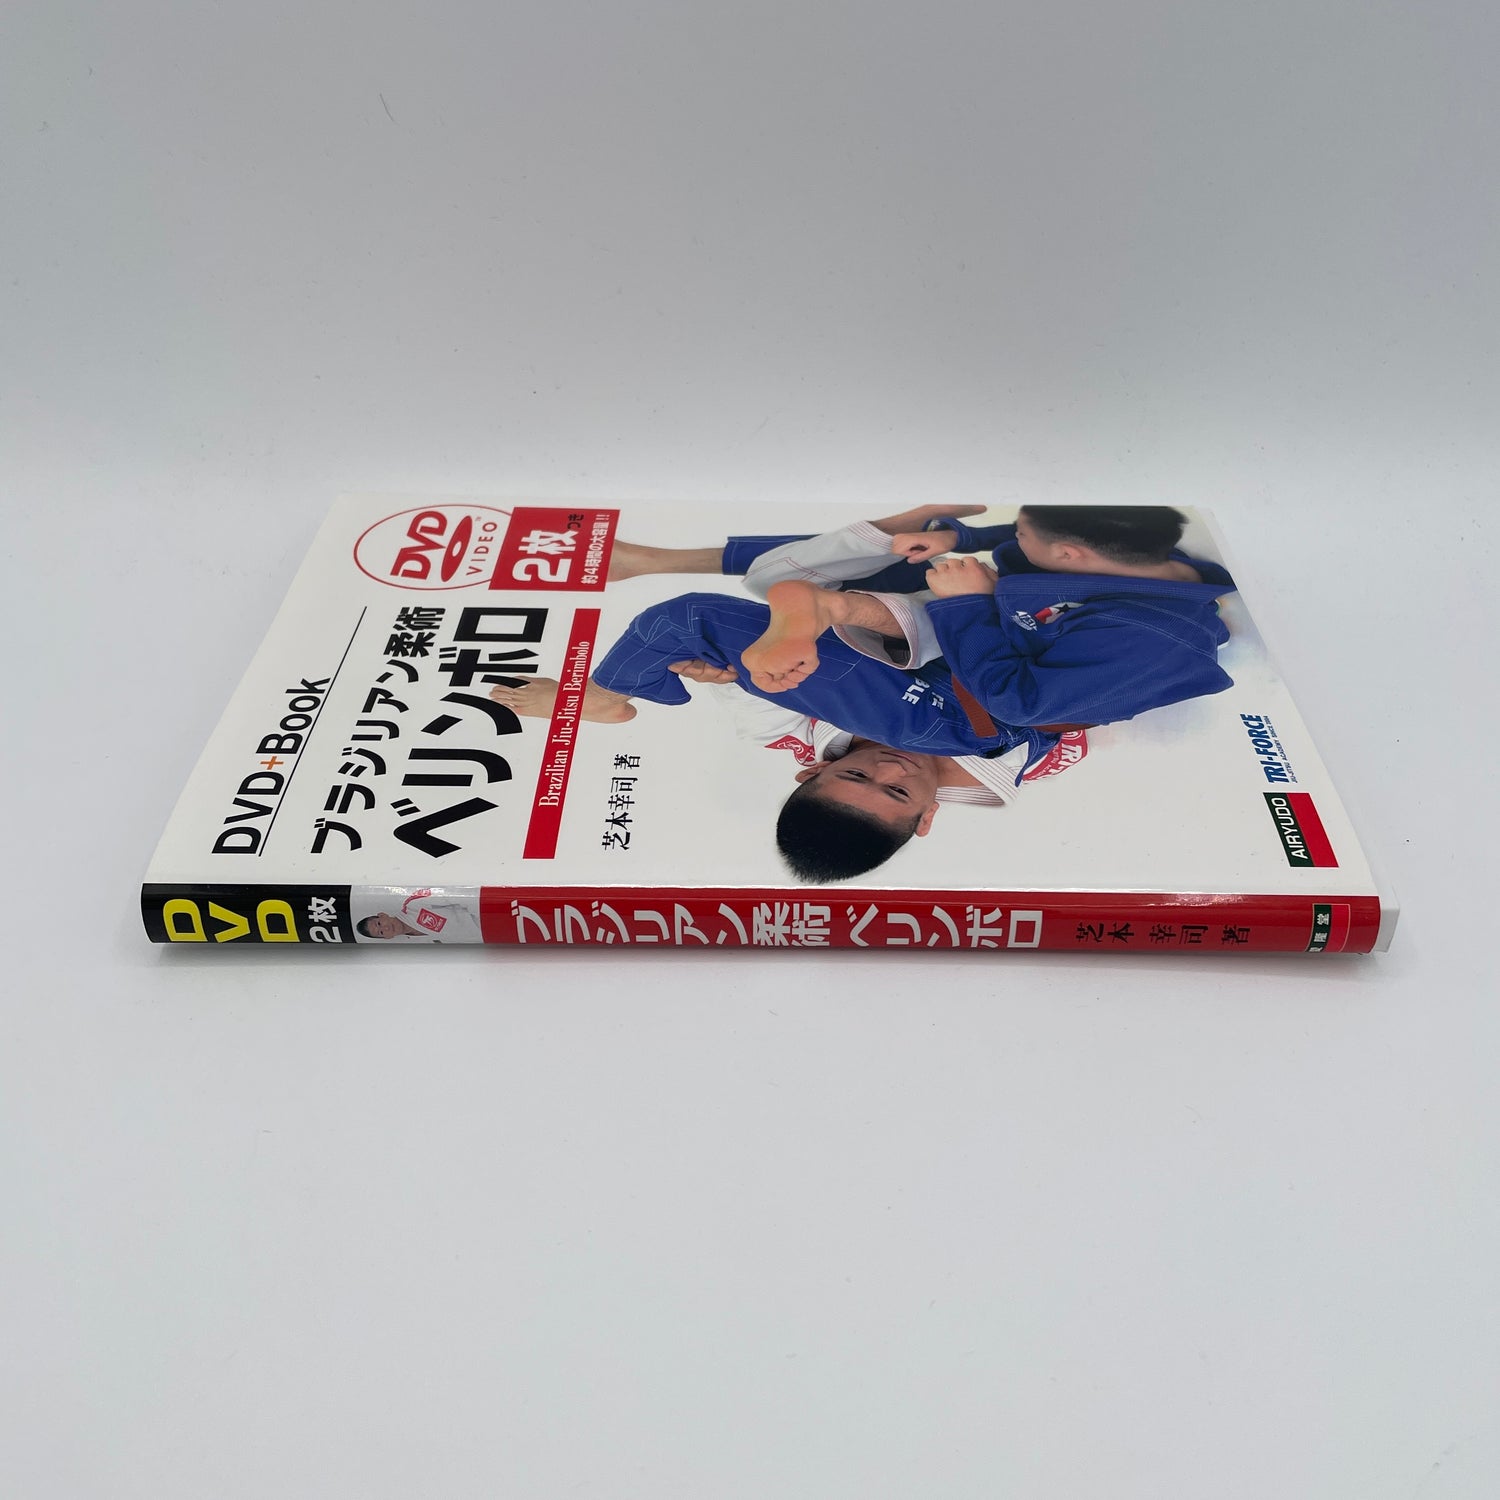 BJJ ベリンボロ ブック & DVD 2 枚セット by 柴本耕司